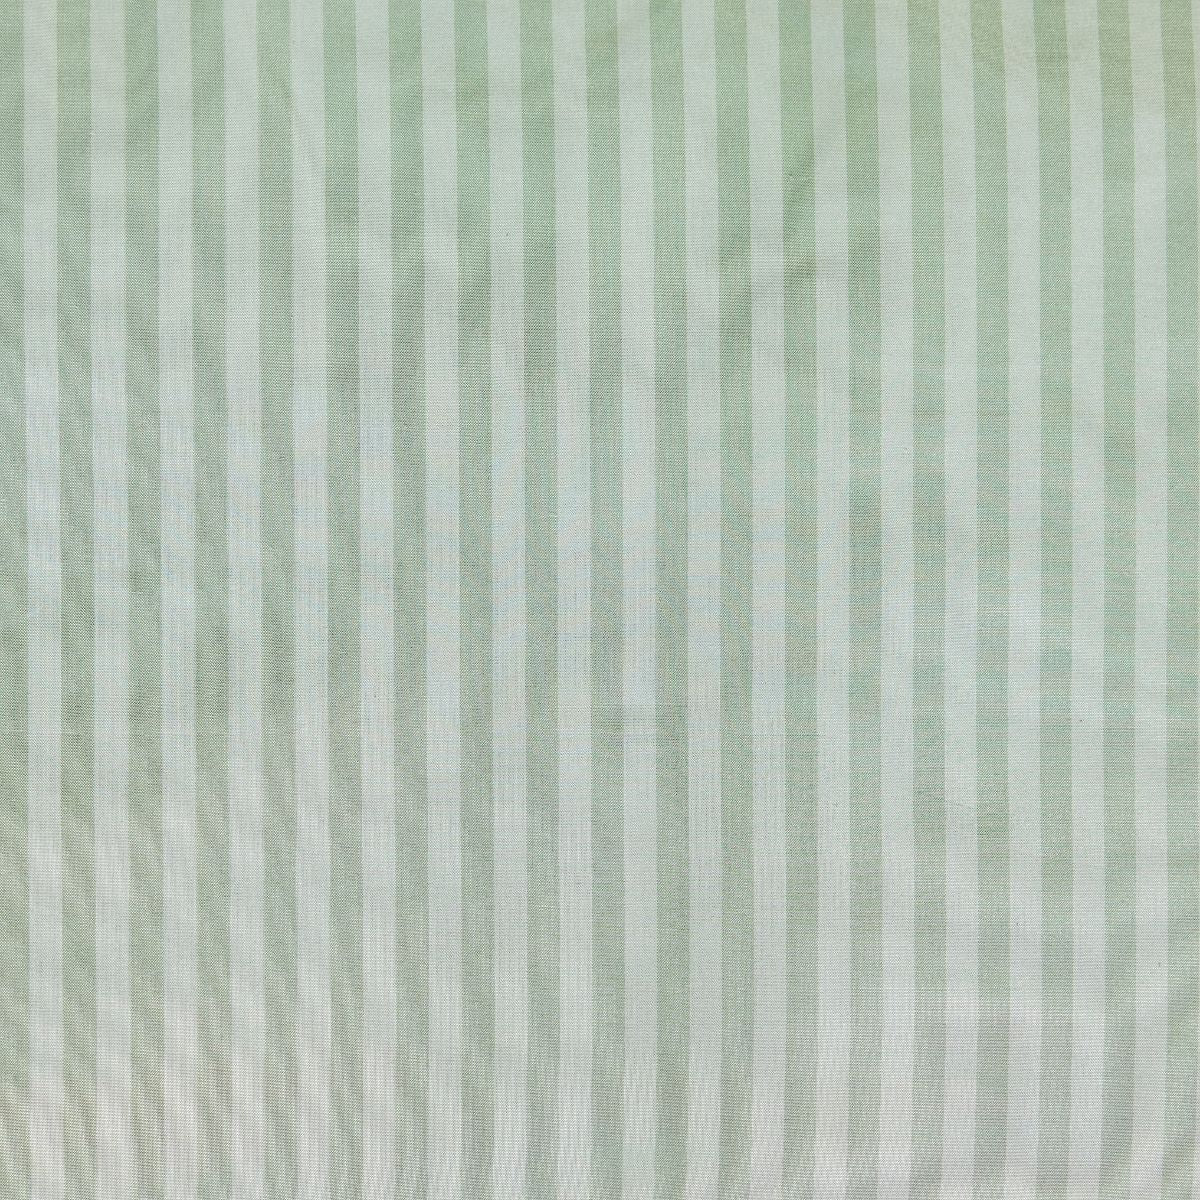 Noelle Stripe Fabric in Wintergreen